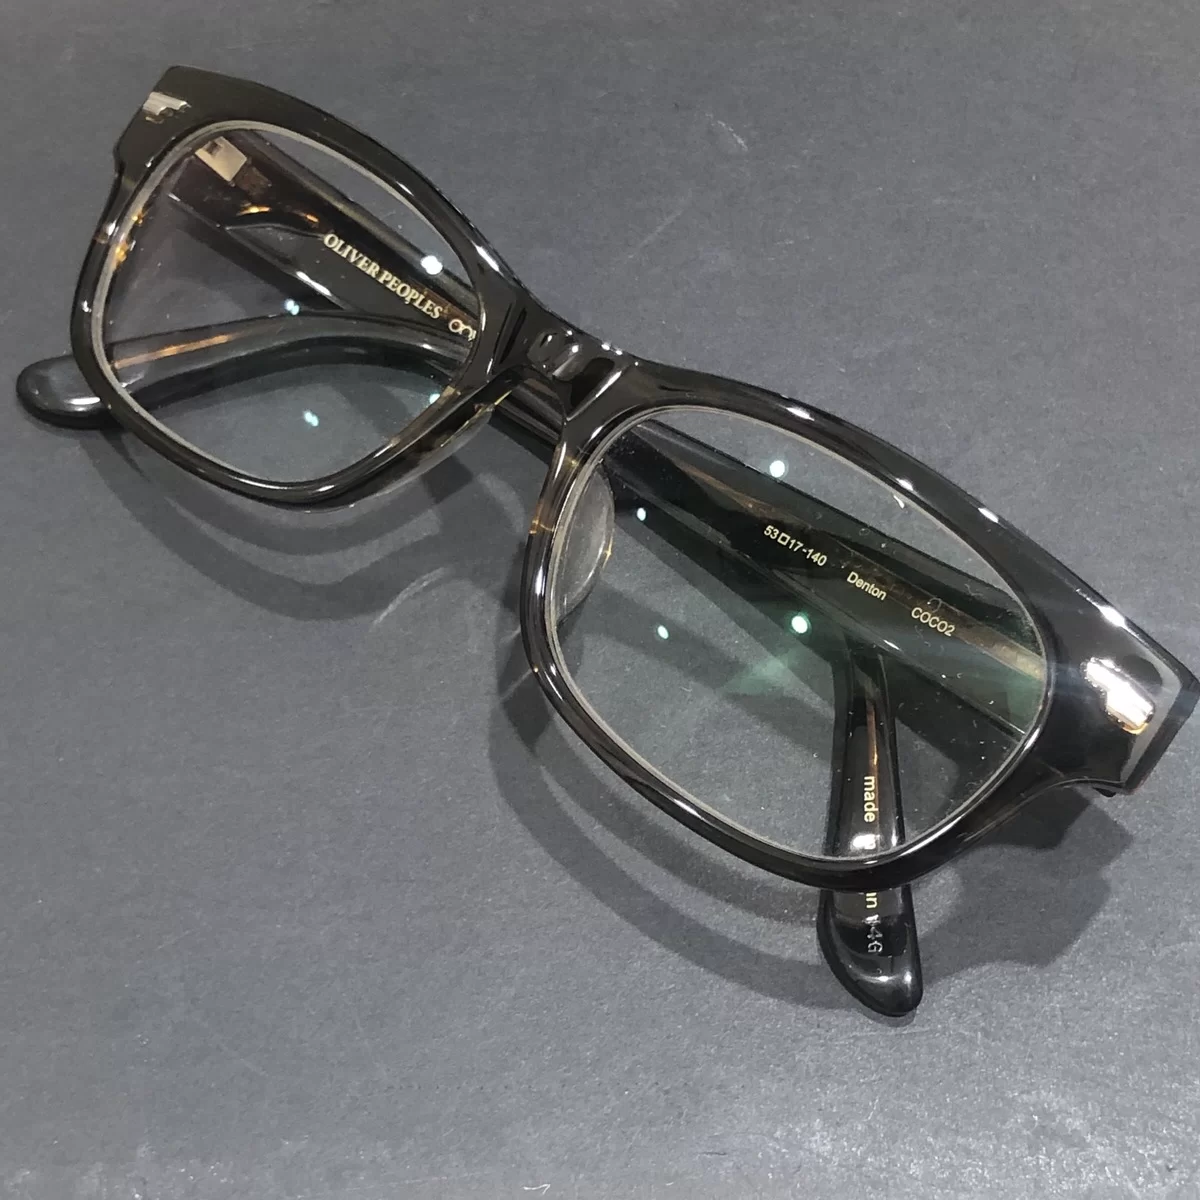 オリバーピープルズのべっ甲 denton セルフレーム 眼鏡の買取実績です。